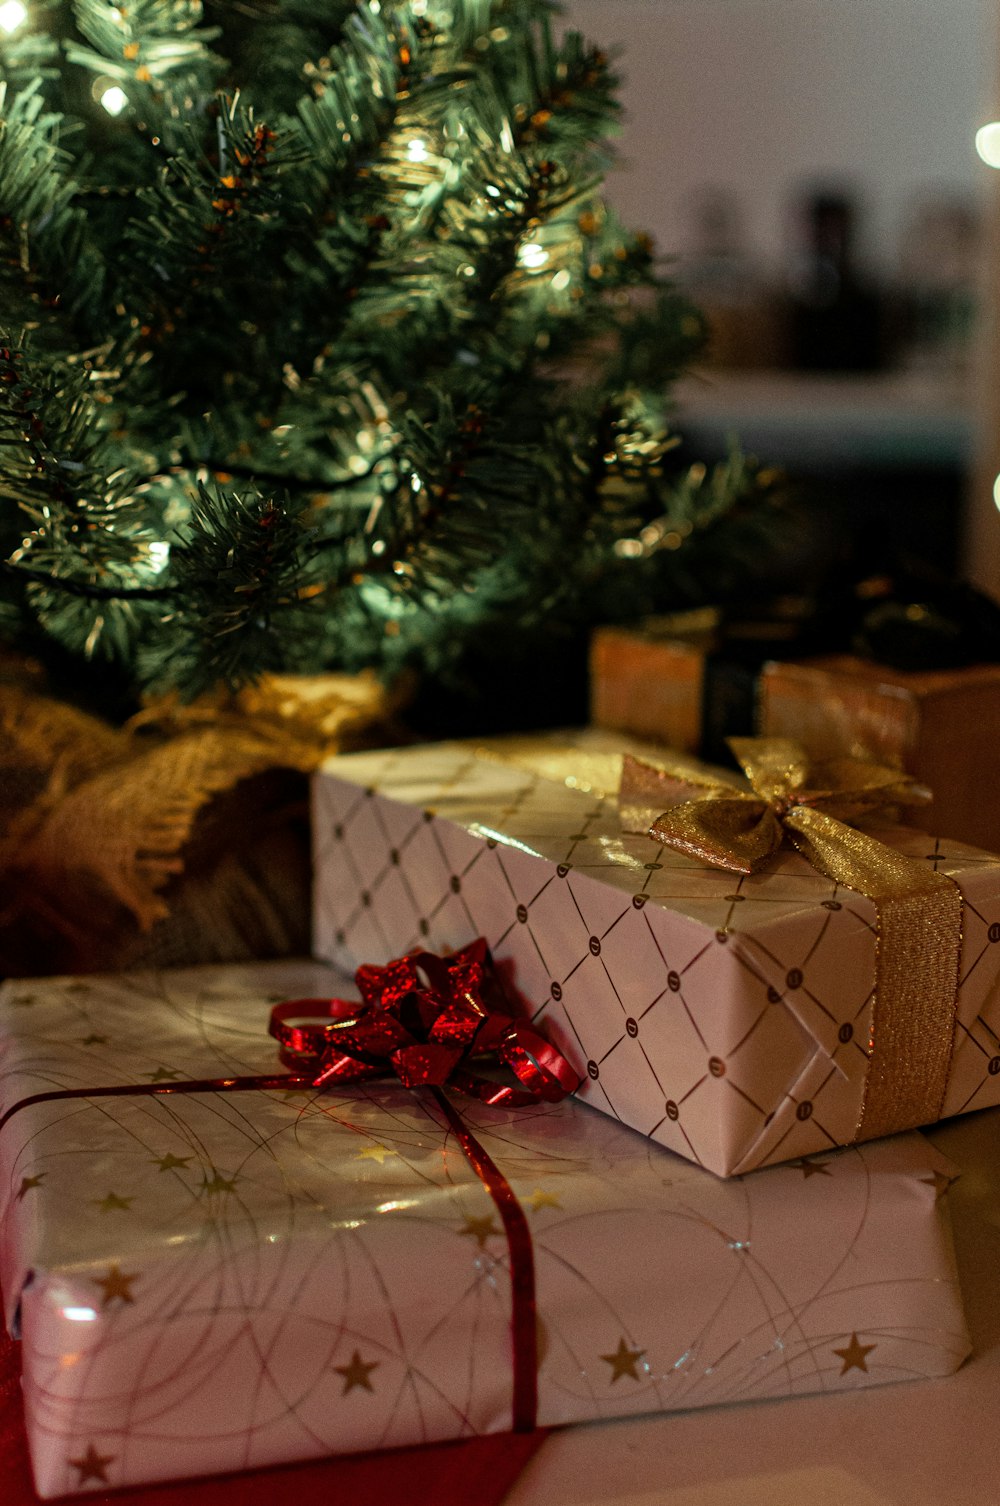 녹색 크리스마스 트리 옆에 있는 갈색과 흰색 선물 상자